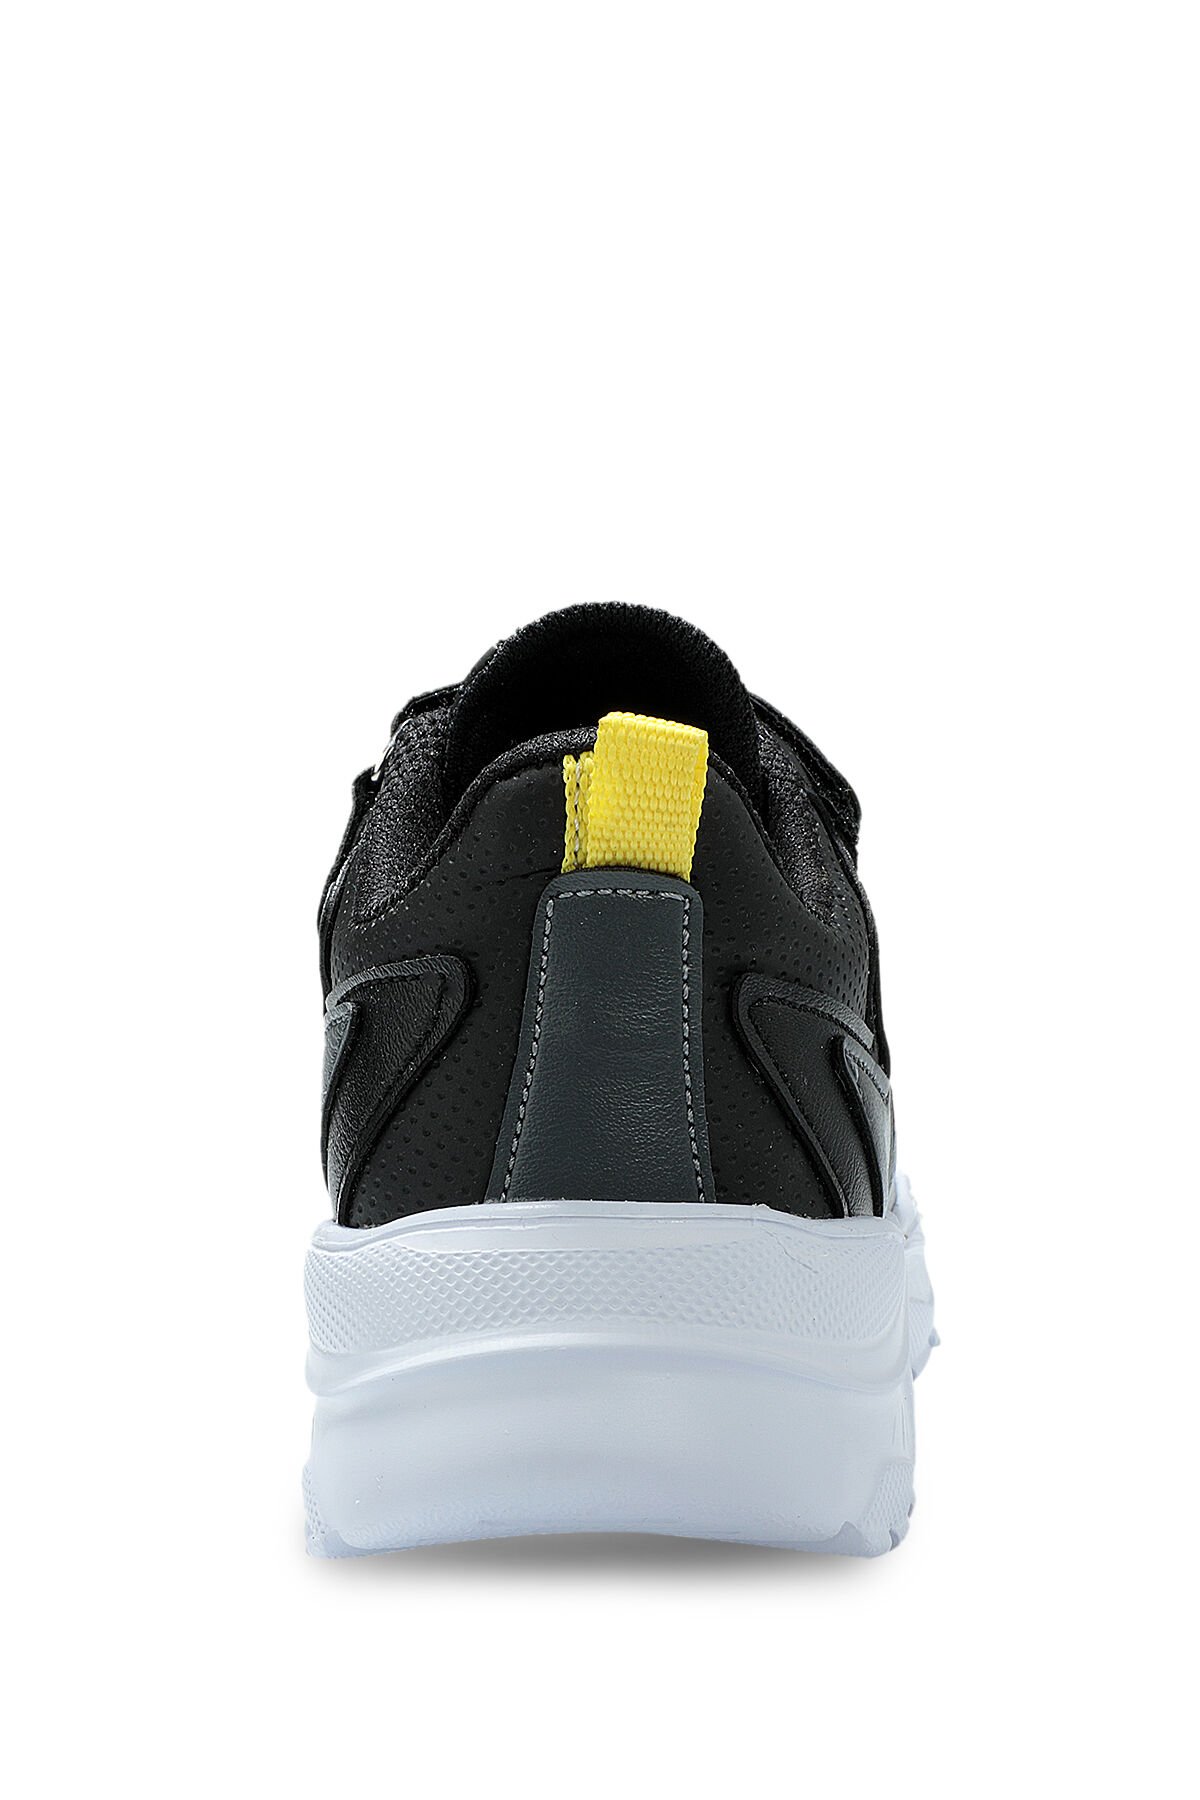 Slazenger KANON I Sneaker Erkek Çocuk Ayakkabı Siyah / Koyu Gri - Thumbnail